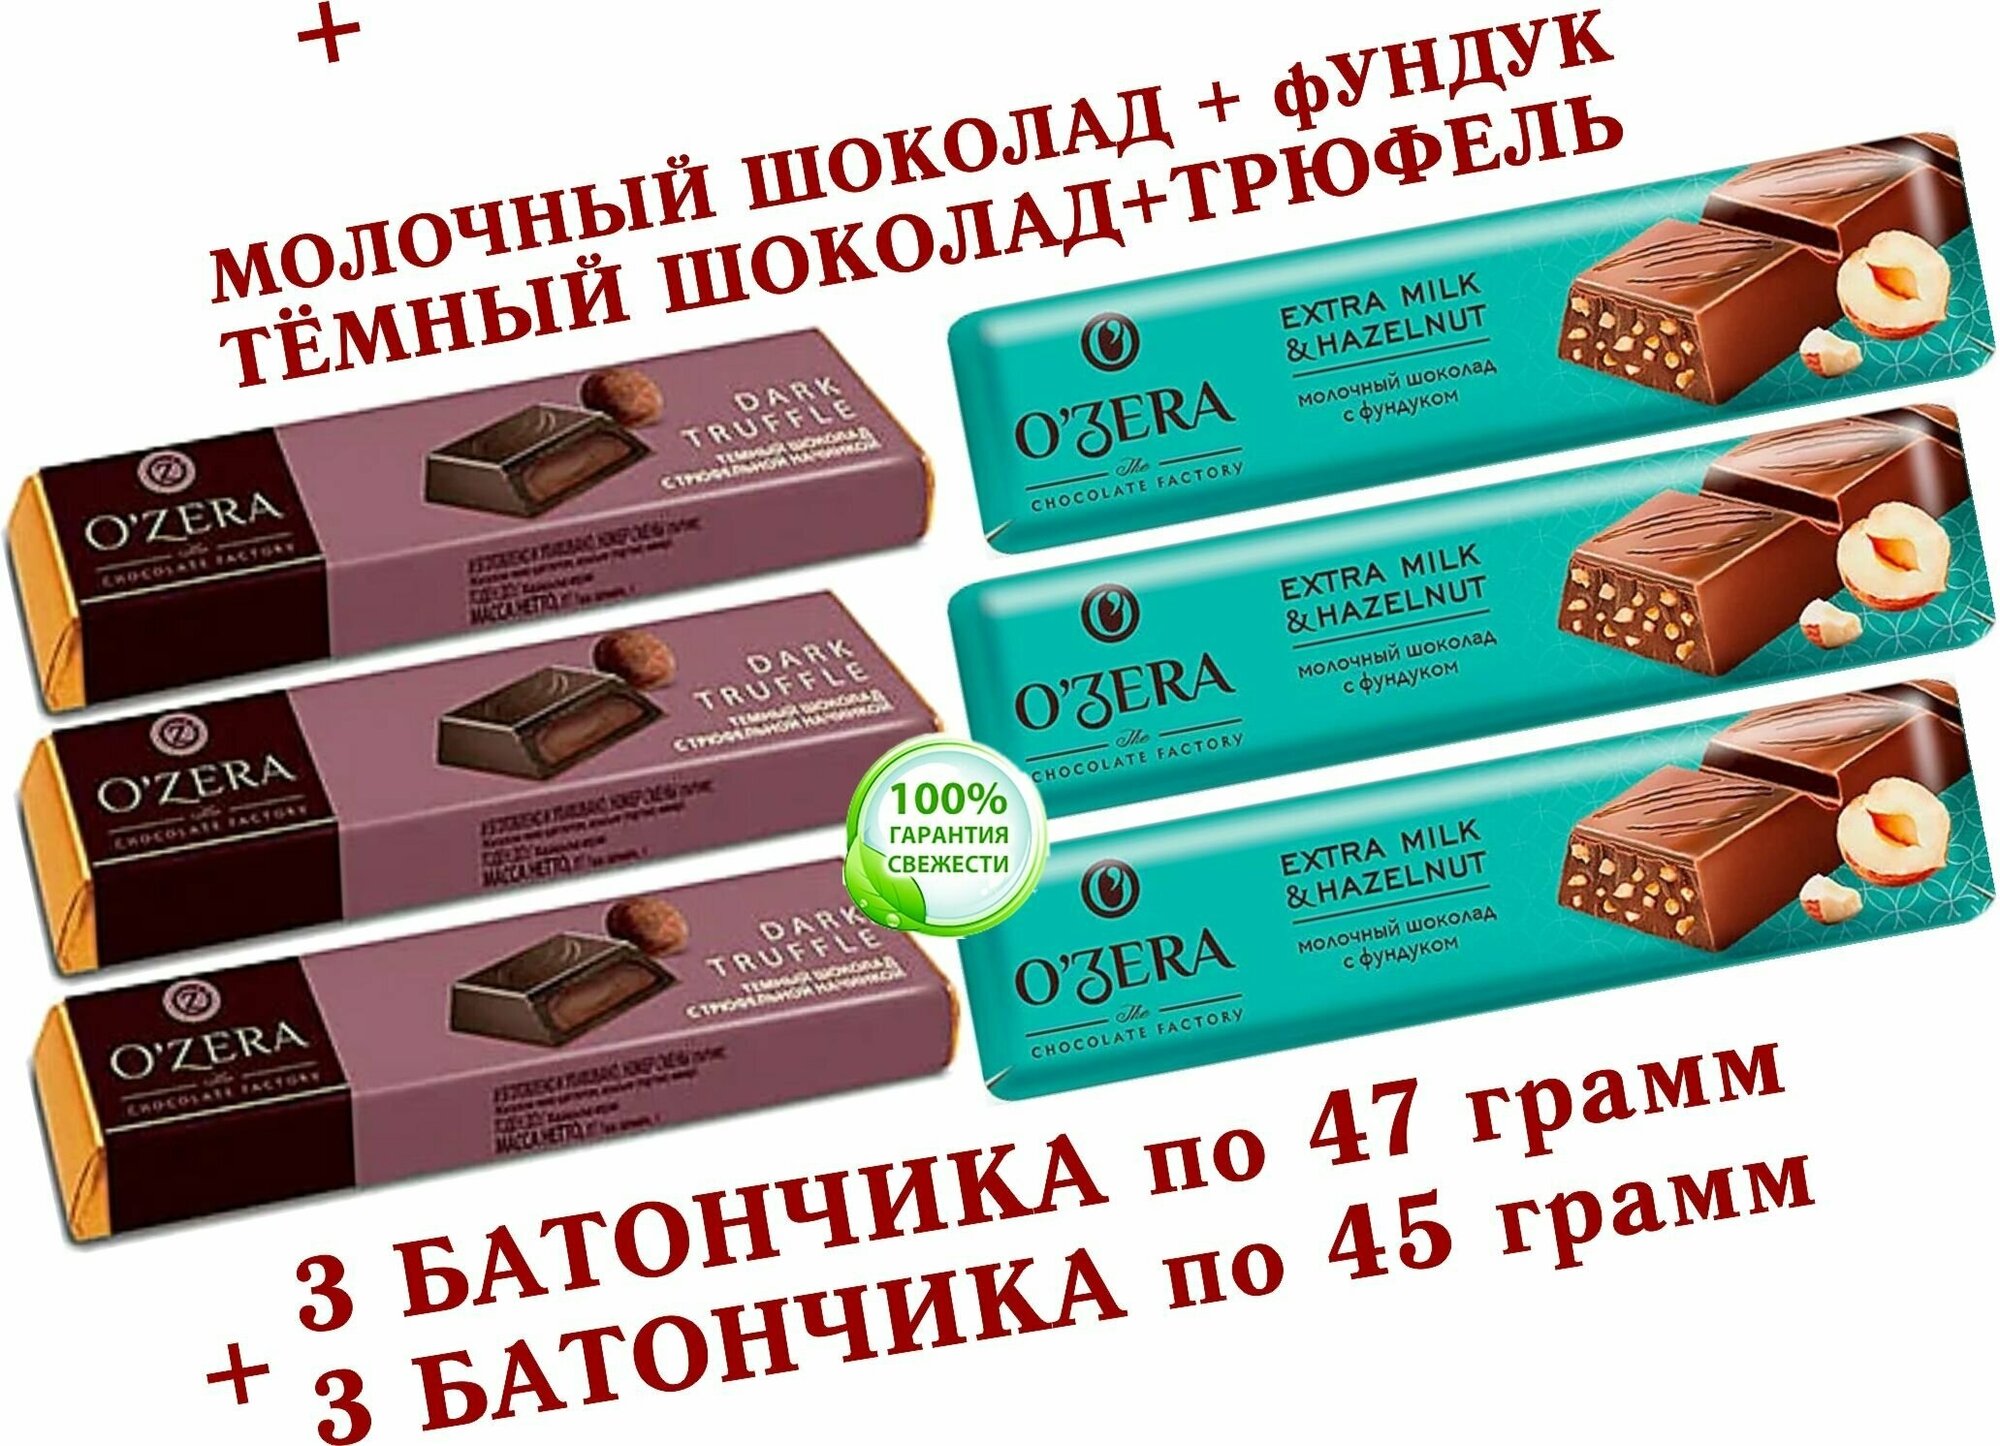 Шоколадный батончик OZera, молочный С фундуком/трюфельная начинка "Dark Truffle", КDV "Озёрский сувенир" - 3 по 45 грамм + 3 по 47 грамм